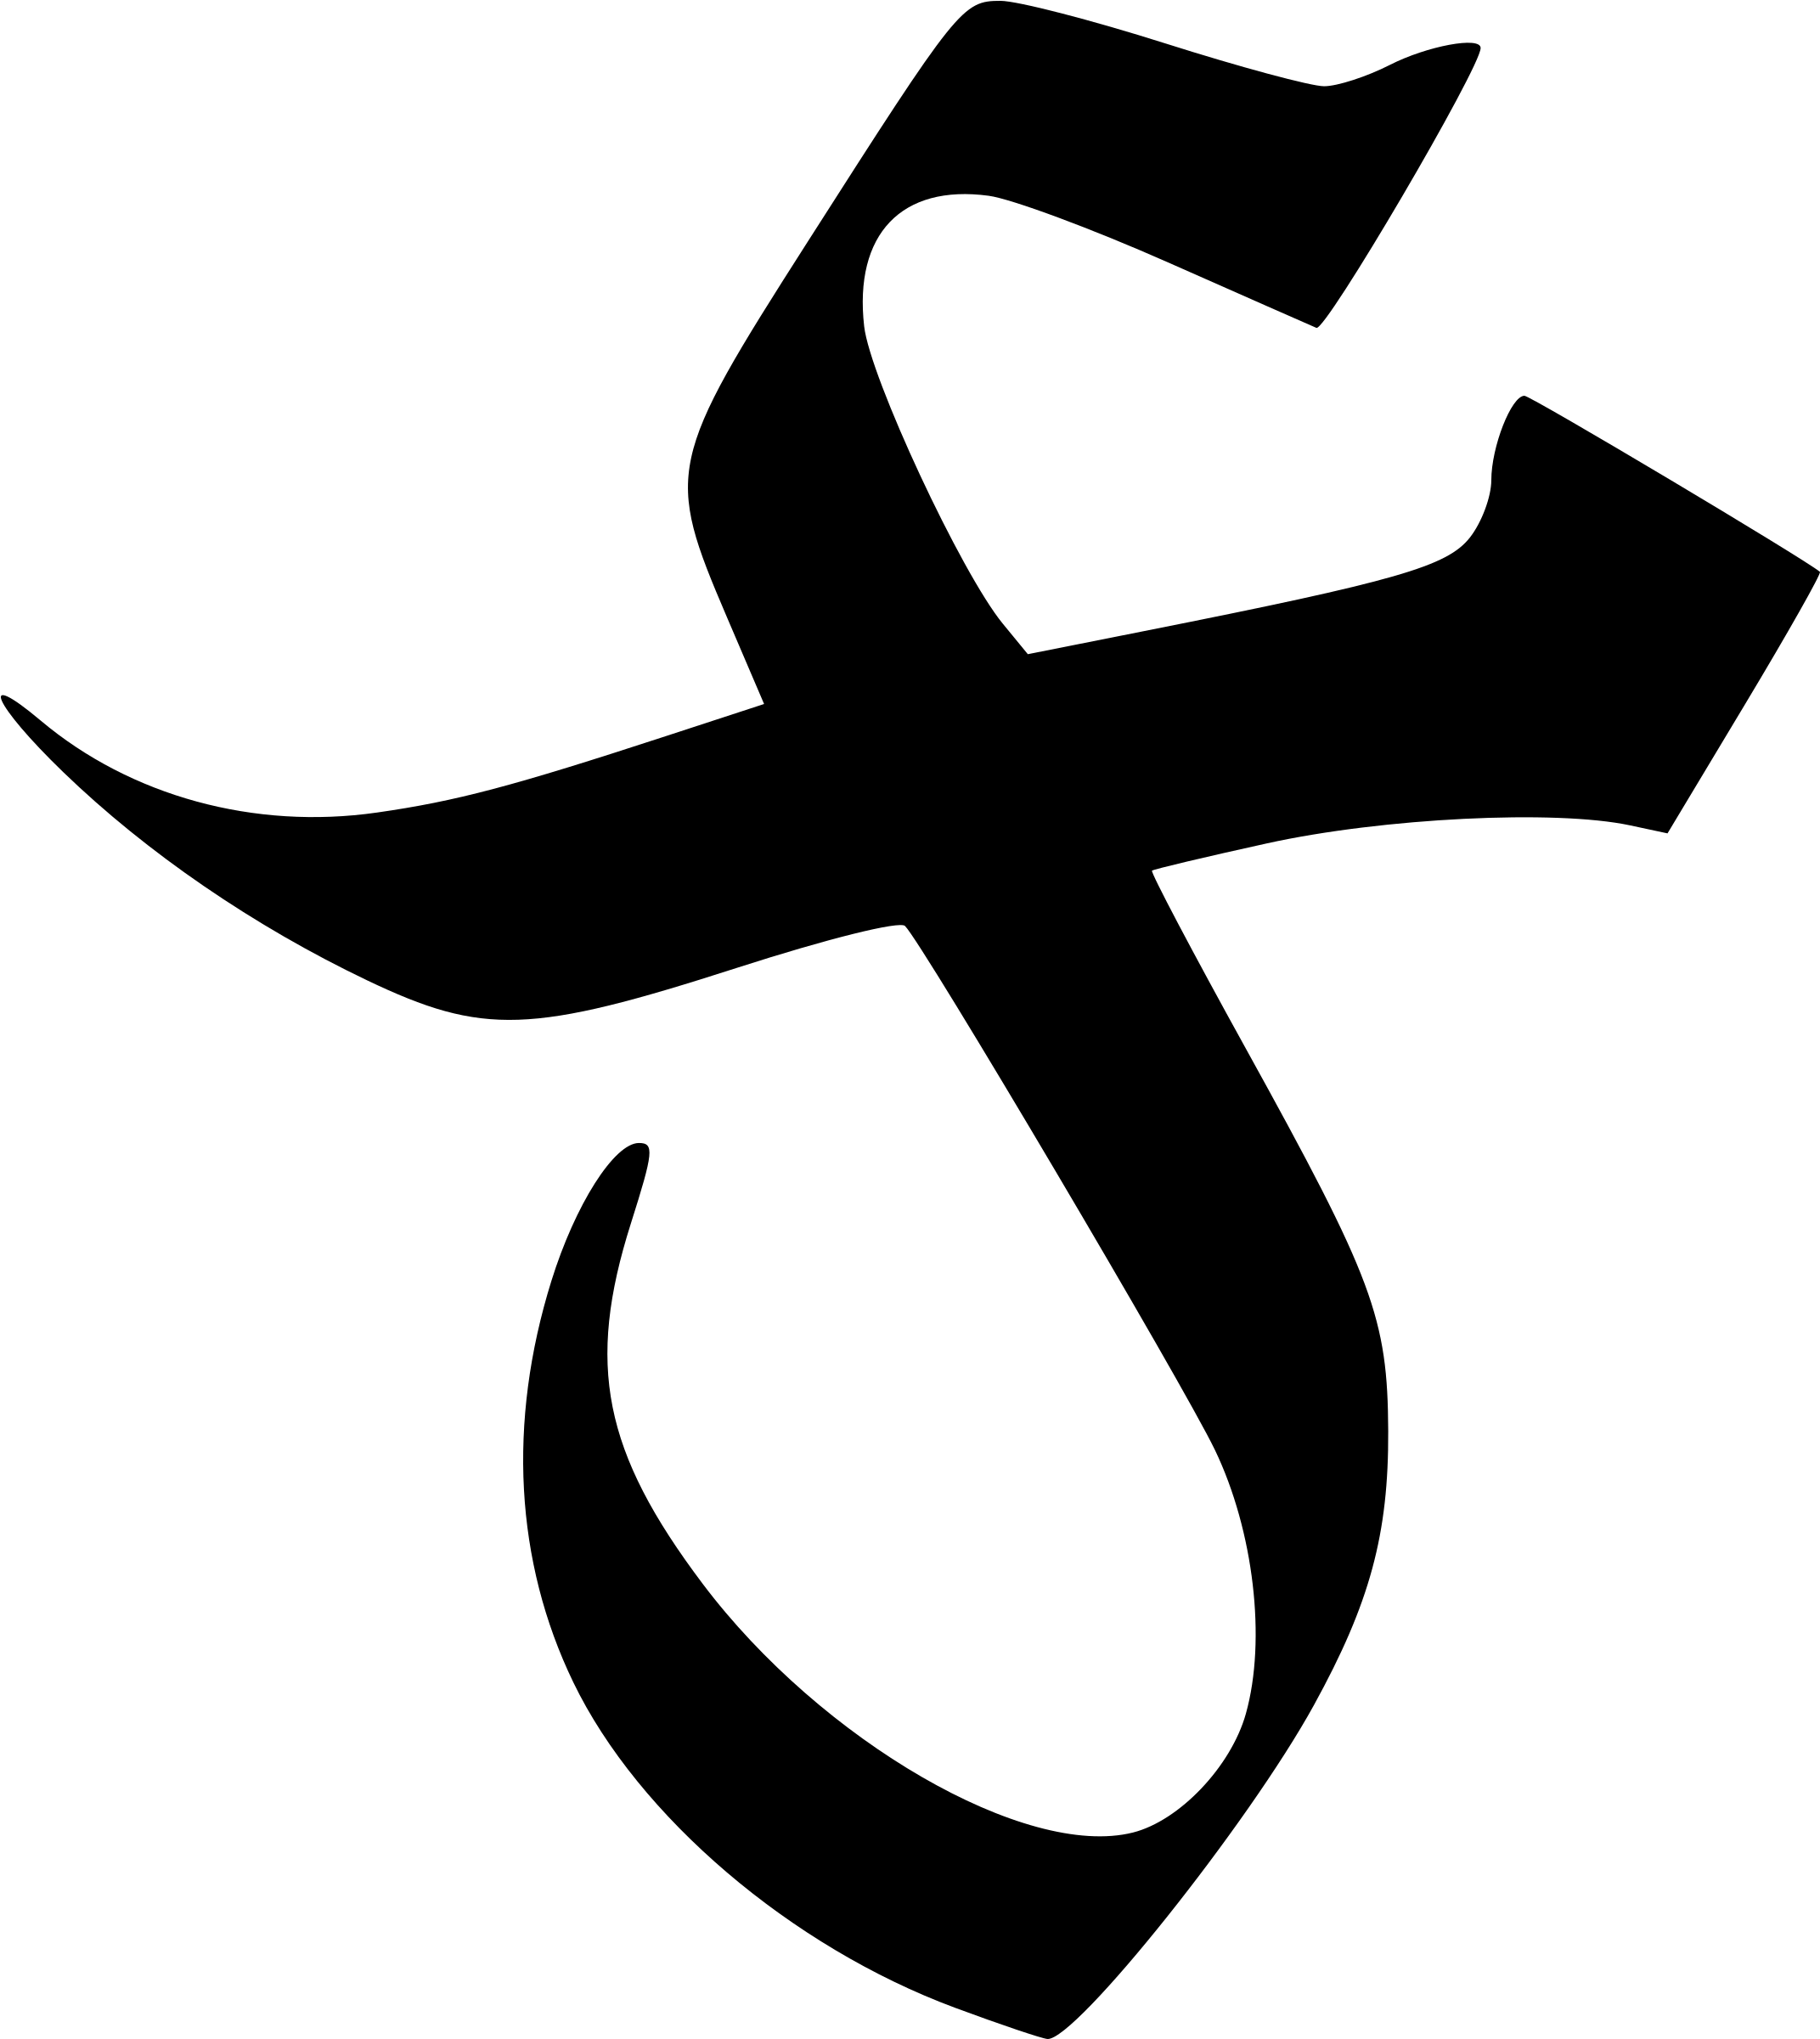 Gothic Glyph 7 - Gothic Glyph (2400x2400)